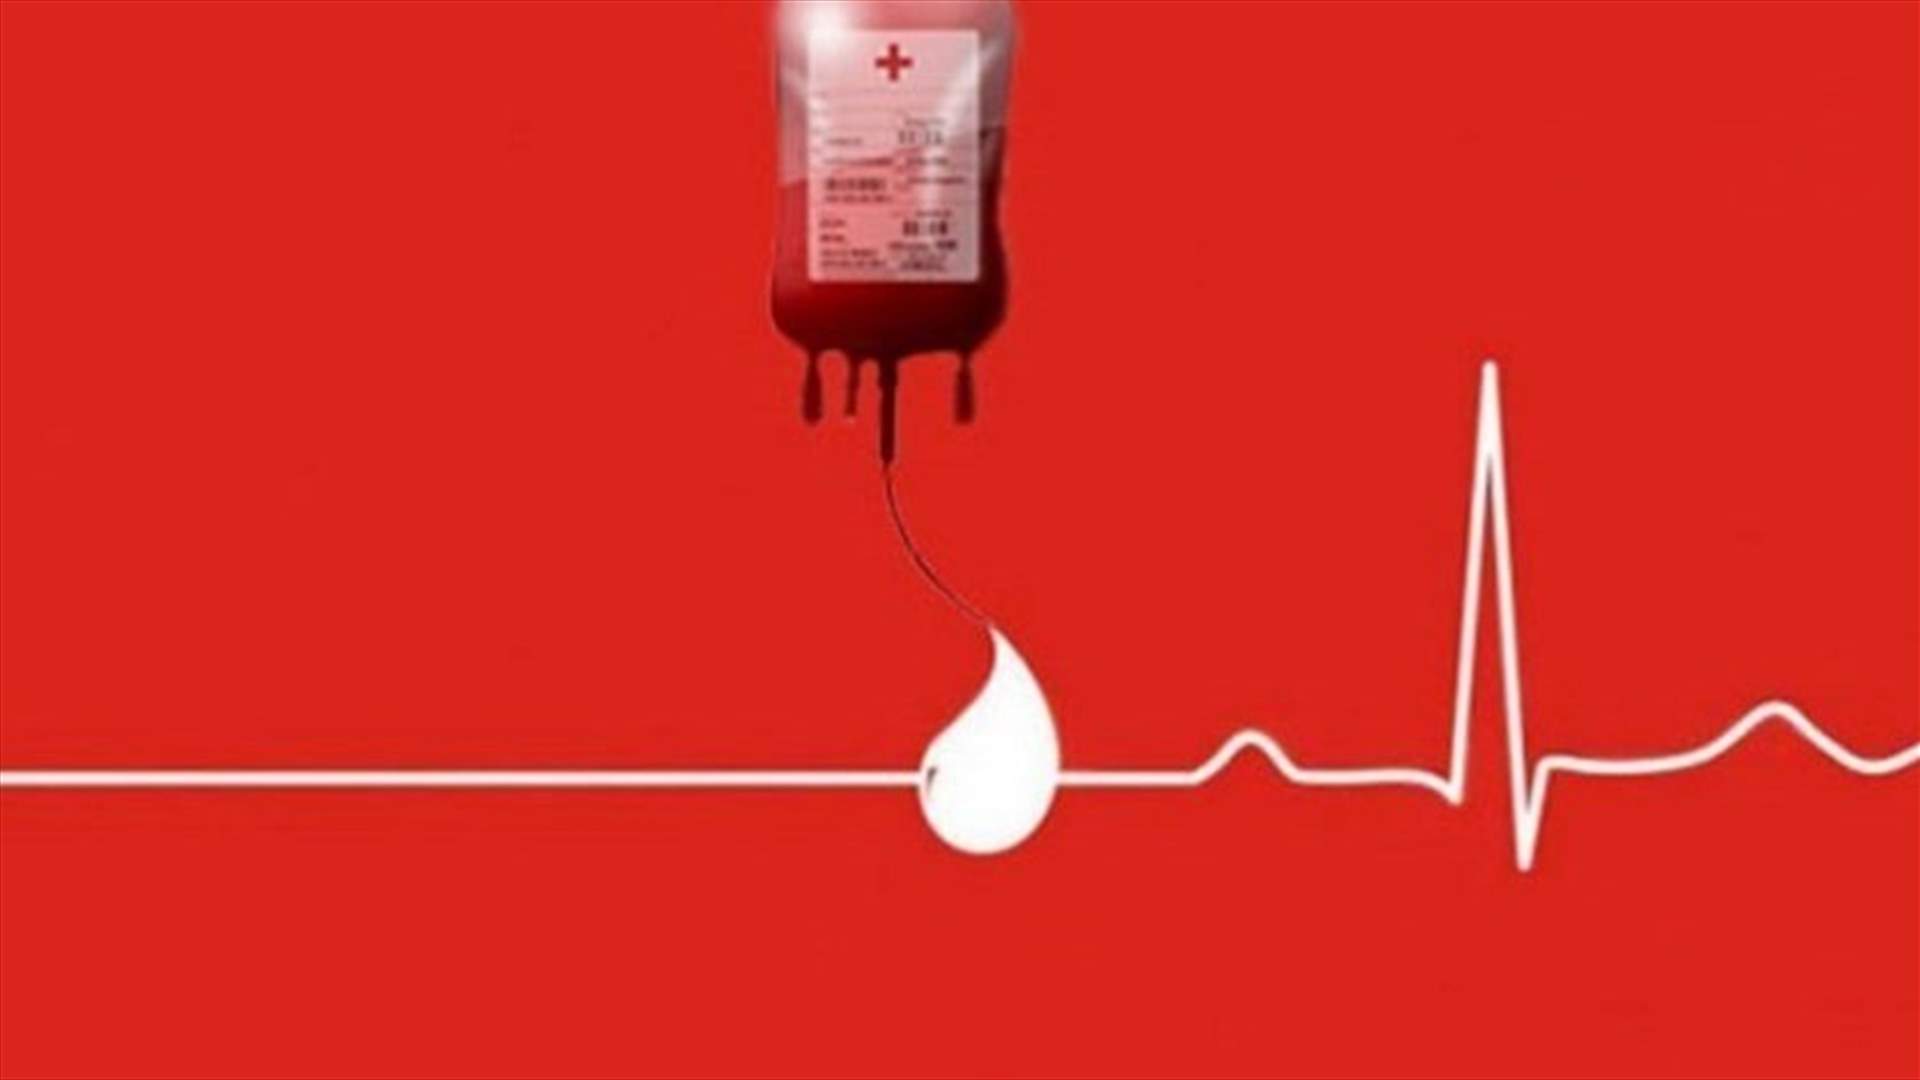 مريض بحاجة ماسة الى بلاكيت دم من فئة AB+ في مستشفى الشرق الاوسط - بصاليم. للتبرع الرجاء الاتصال على الرقم التالي: 03423942